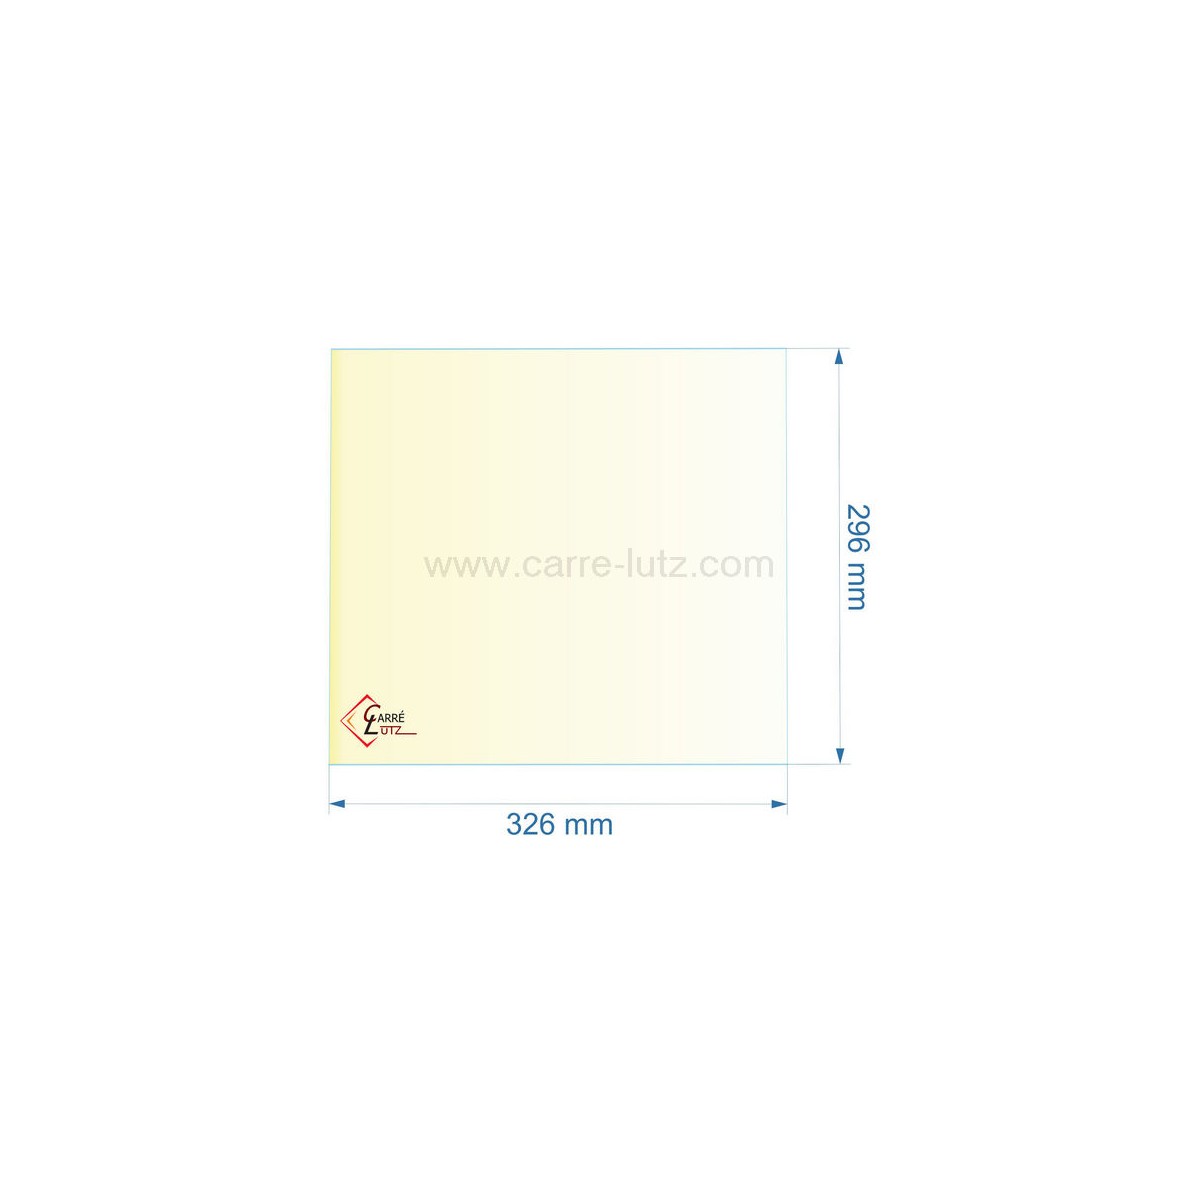 00398  805004 - Vitre réfractaire Vitrocéramique 326x296 mm de foyer Panadero Aragon 49,90 €